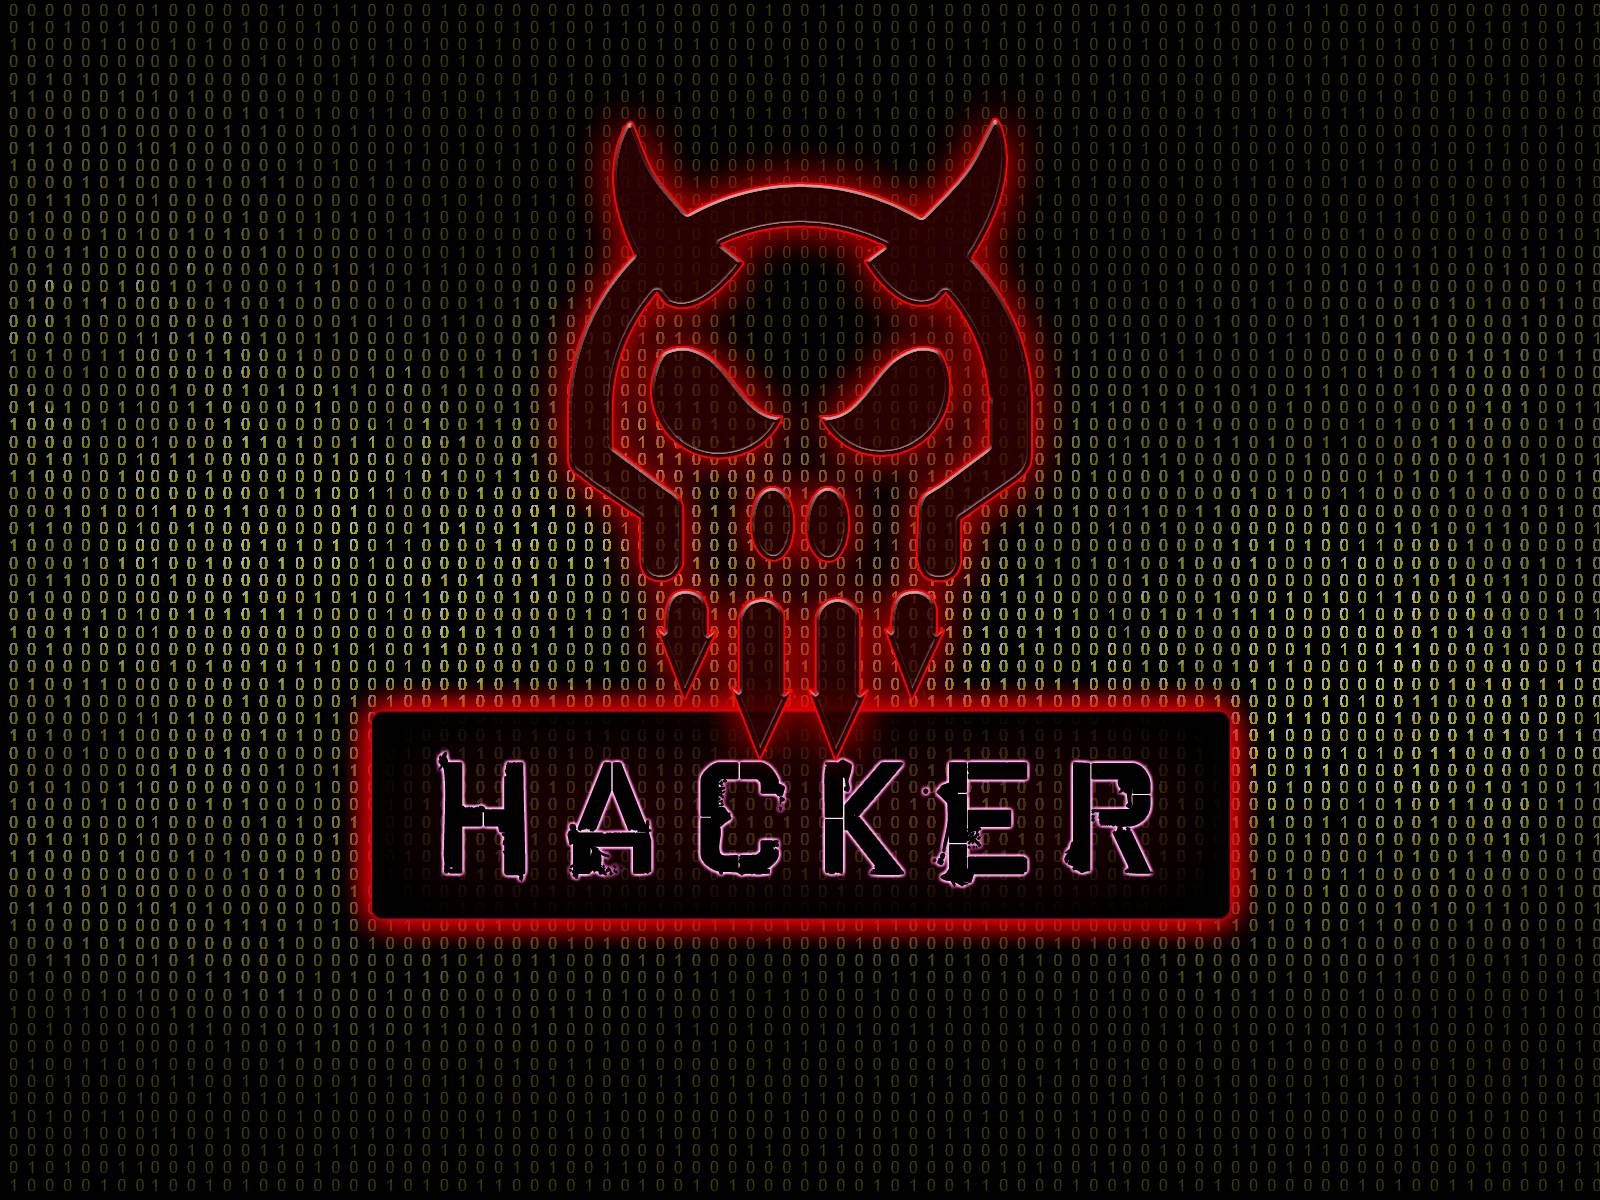 Update 70+ hacker wallpaper for android best - 3tdesign.edu.vn